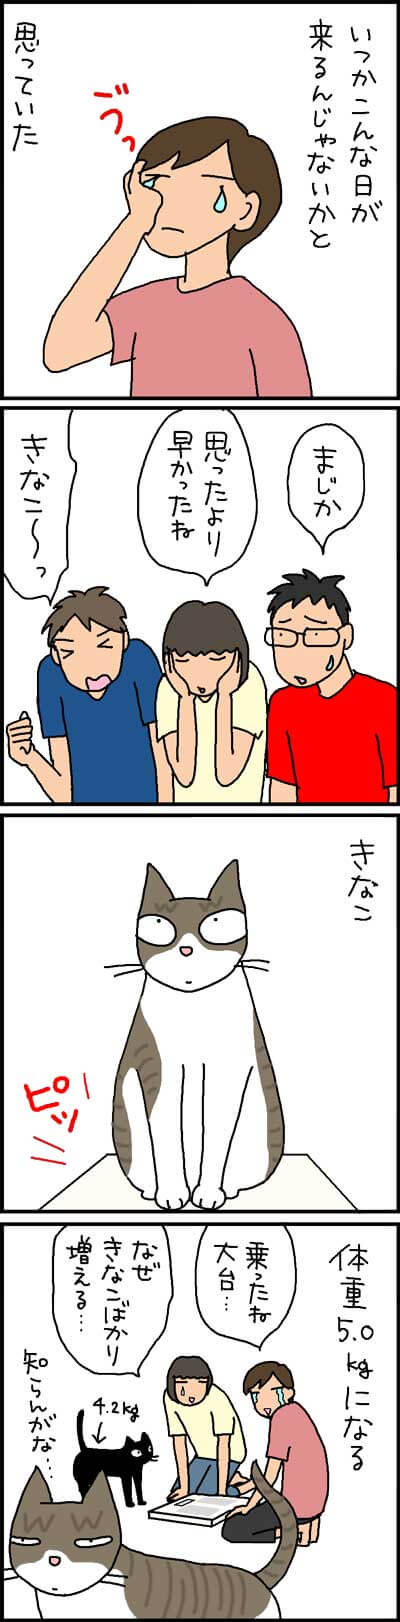 太りつつある猫の4コマ猫漫画